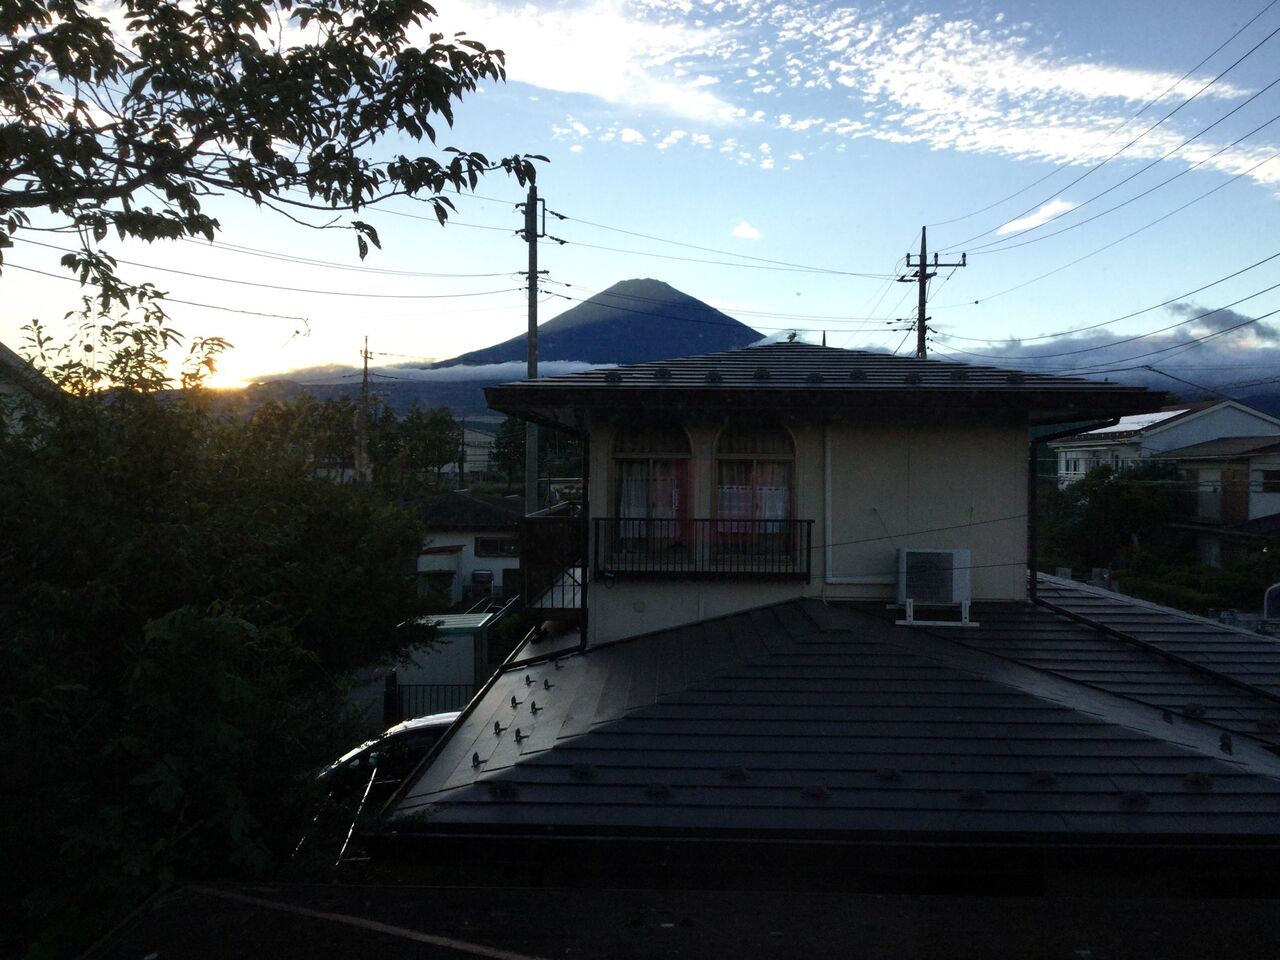 第３の観測サイト 御殿場基地事務所から撮影 秋空に映える富士山 太郎坊のそよ風